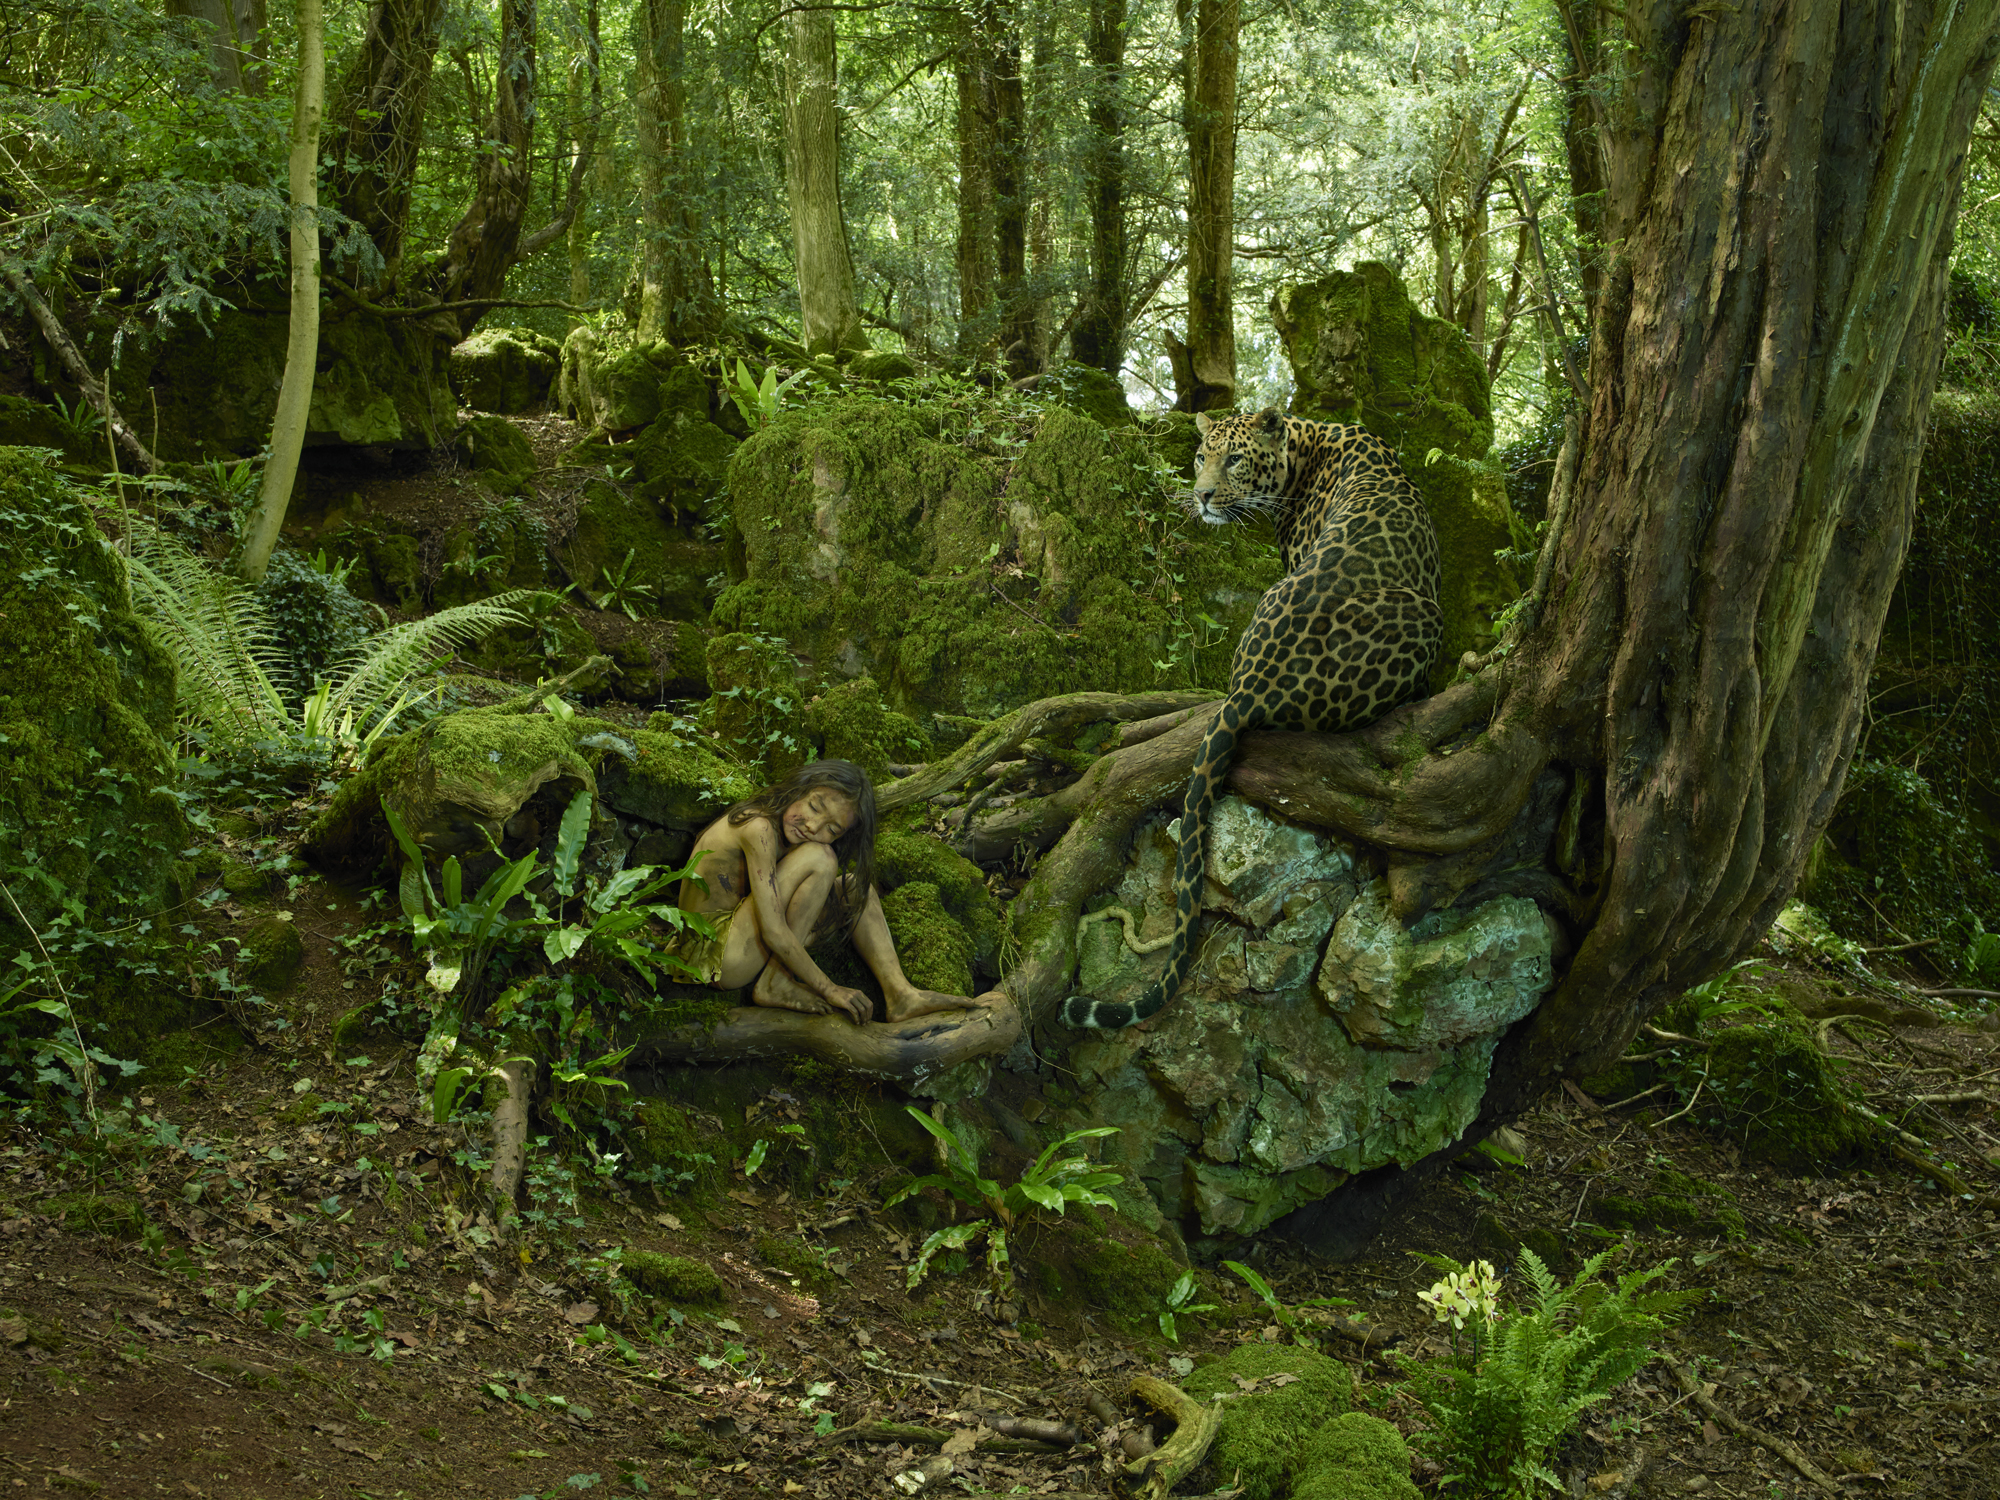 Джунгли внутри тебя. Мальчик леопард Индия 1912. Грин таинственный лес. Джунгли реальные.